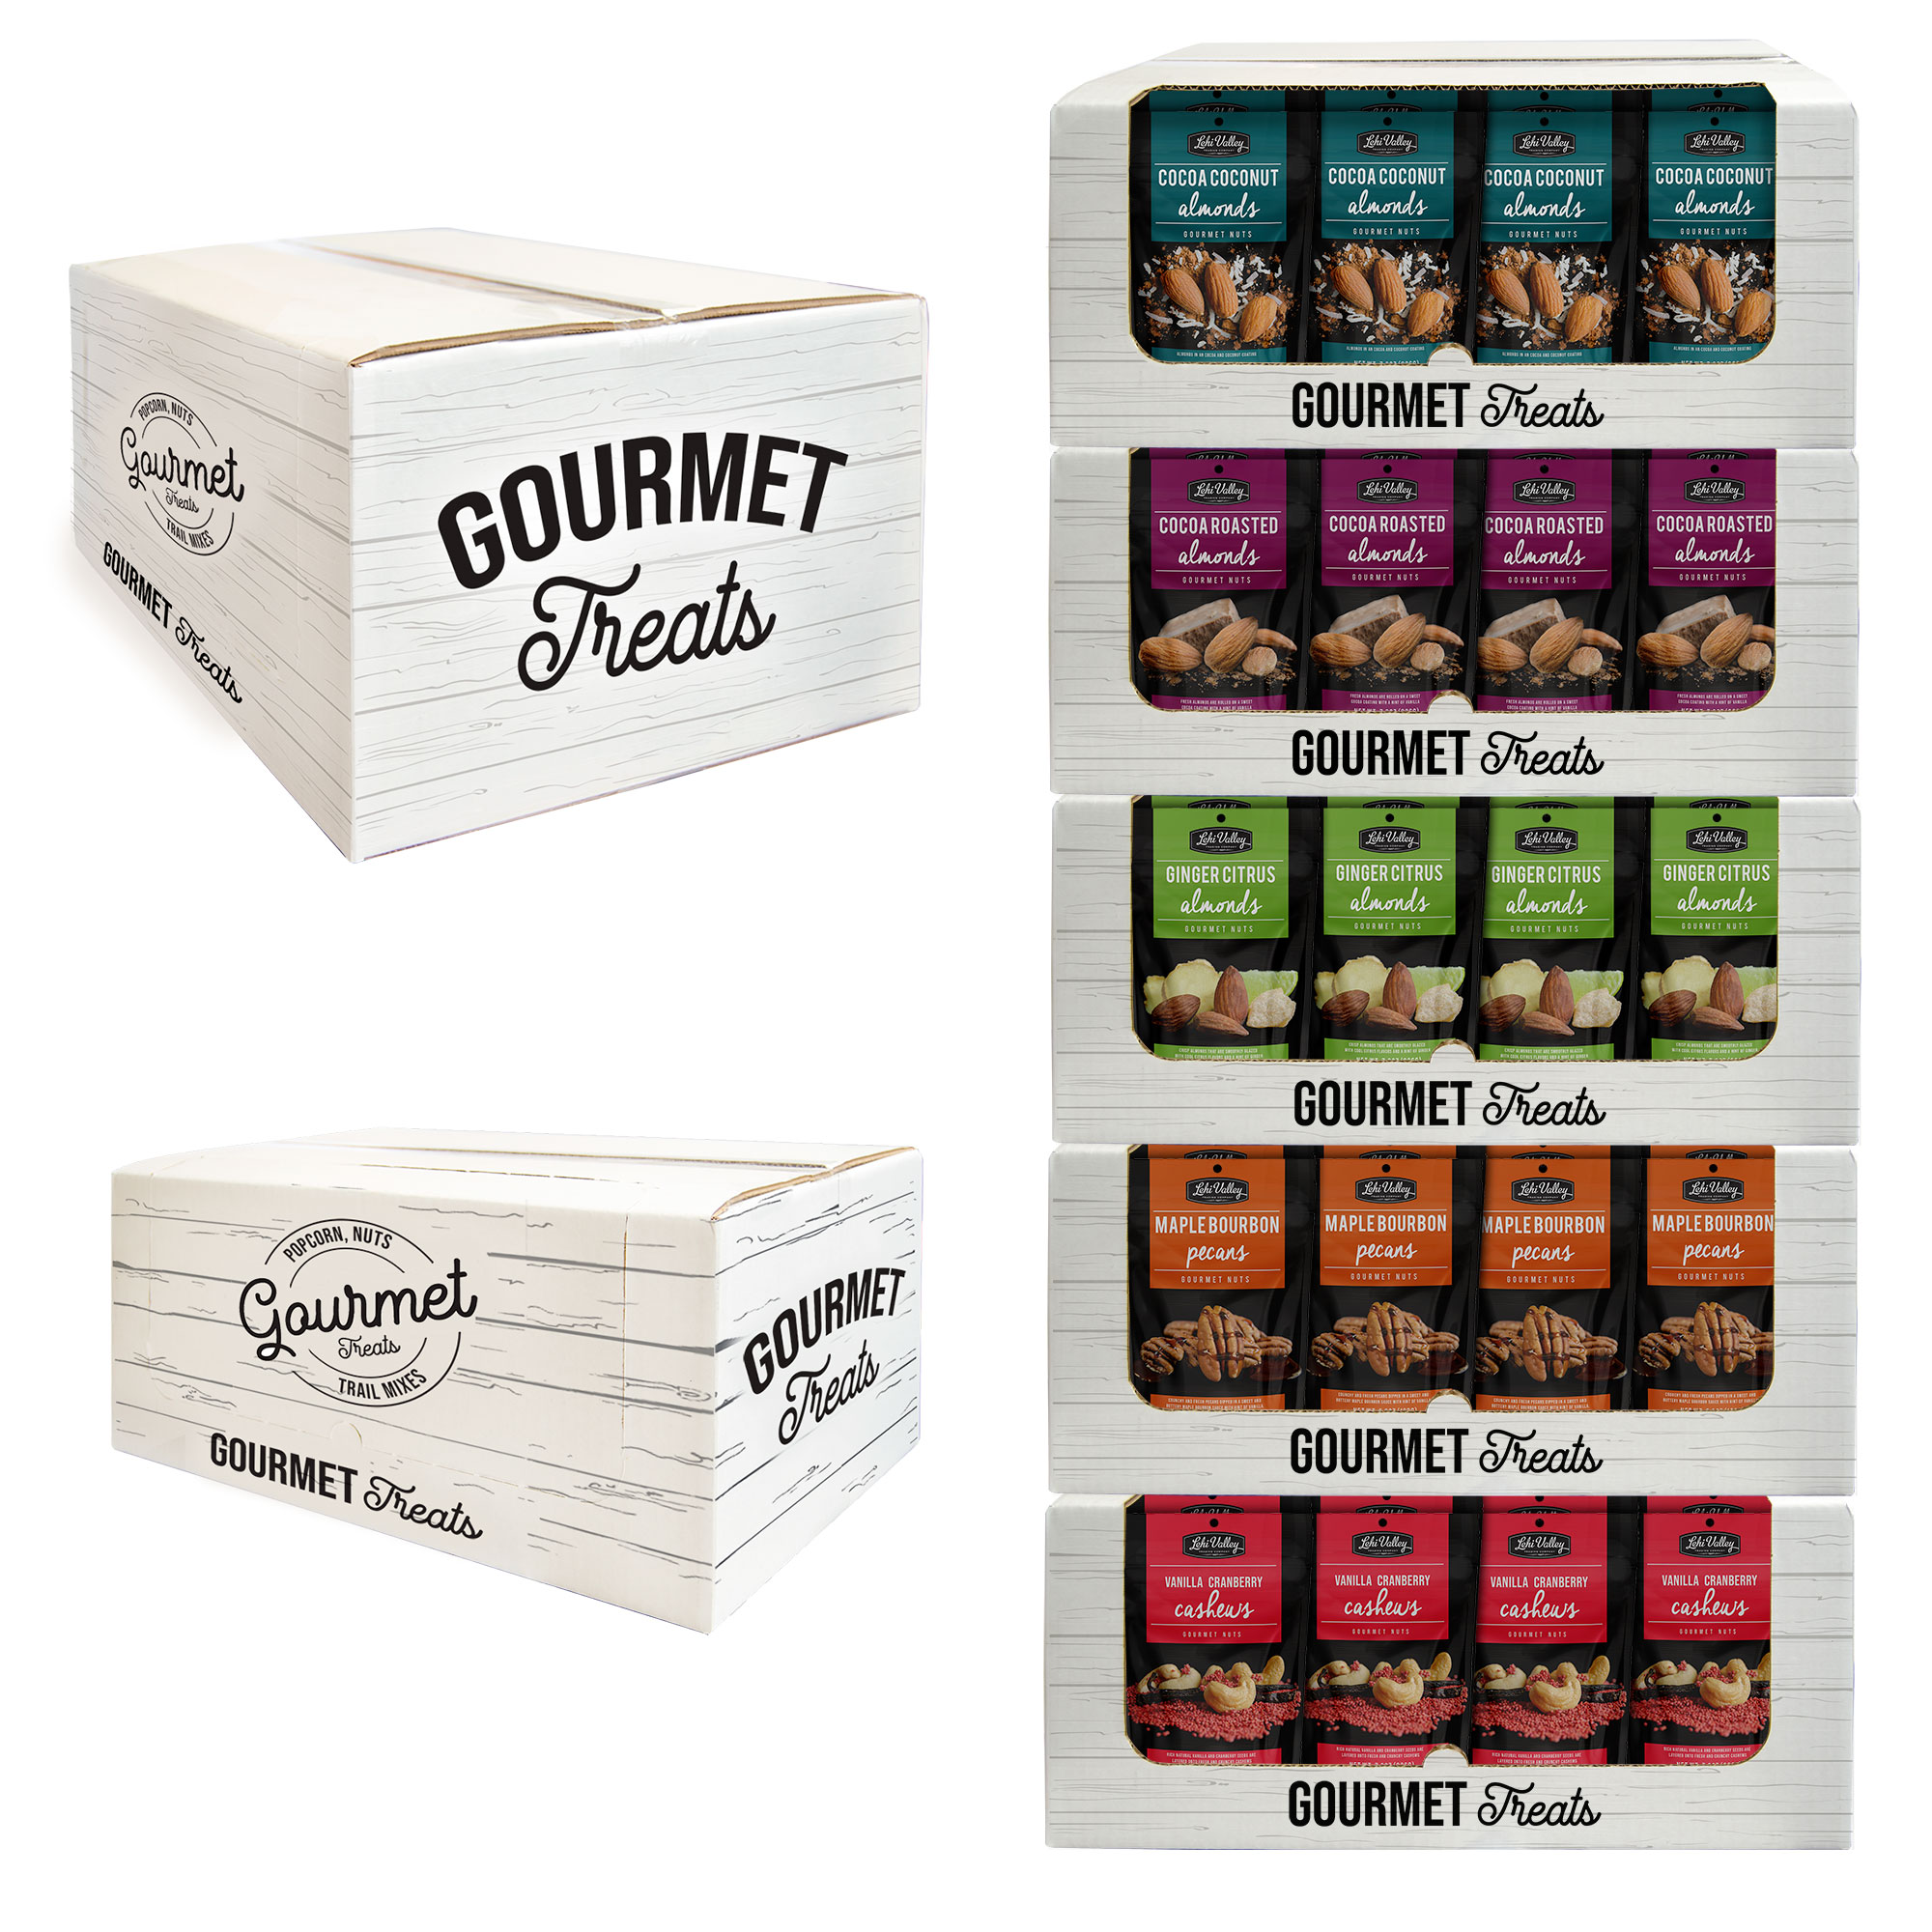 Gourmet Nuts innovative packaging